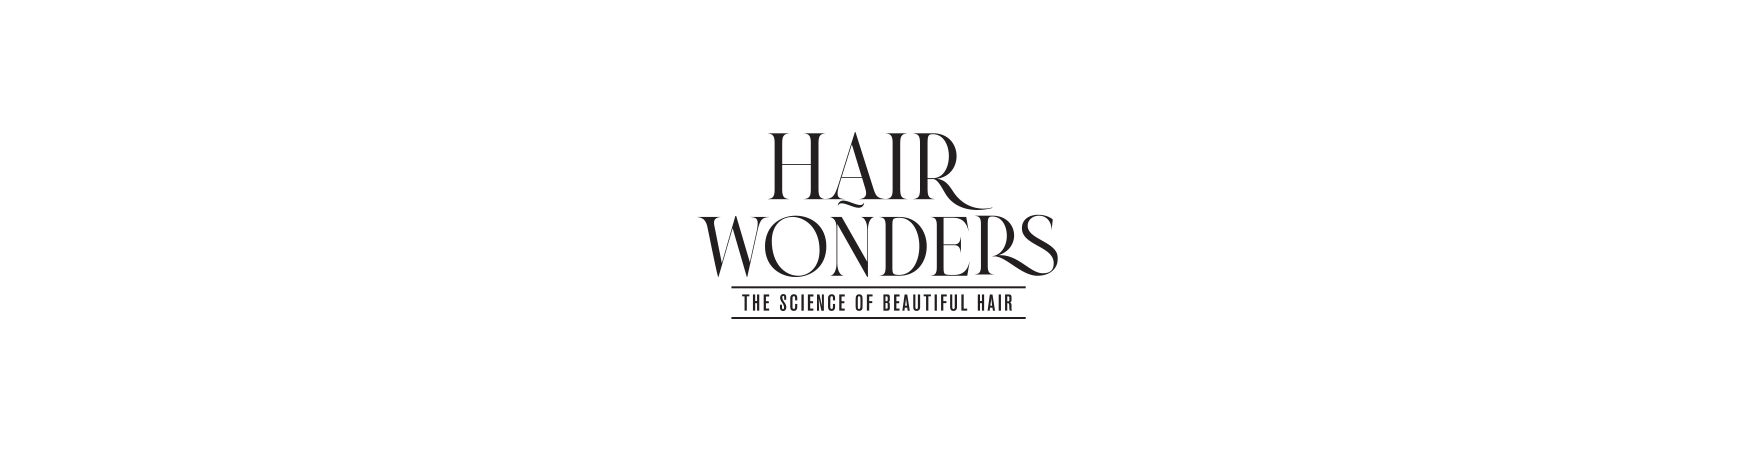 Hair Wonders